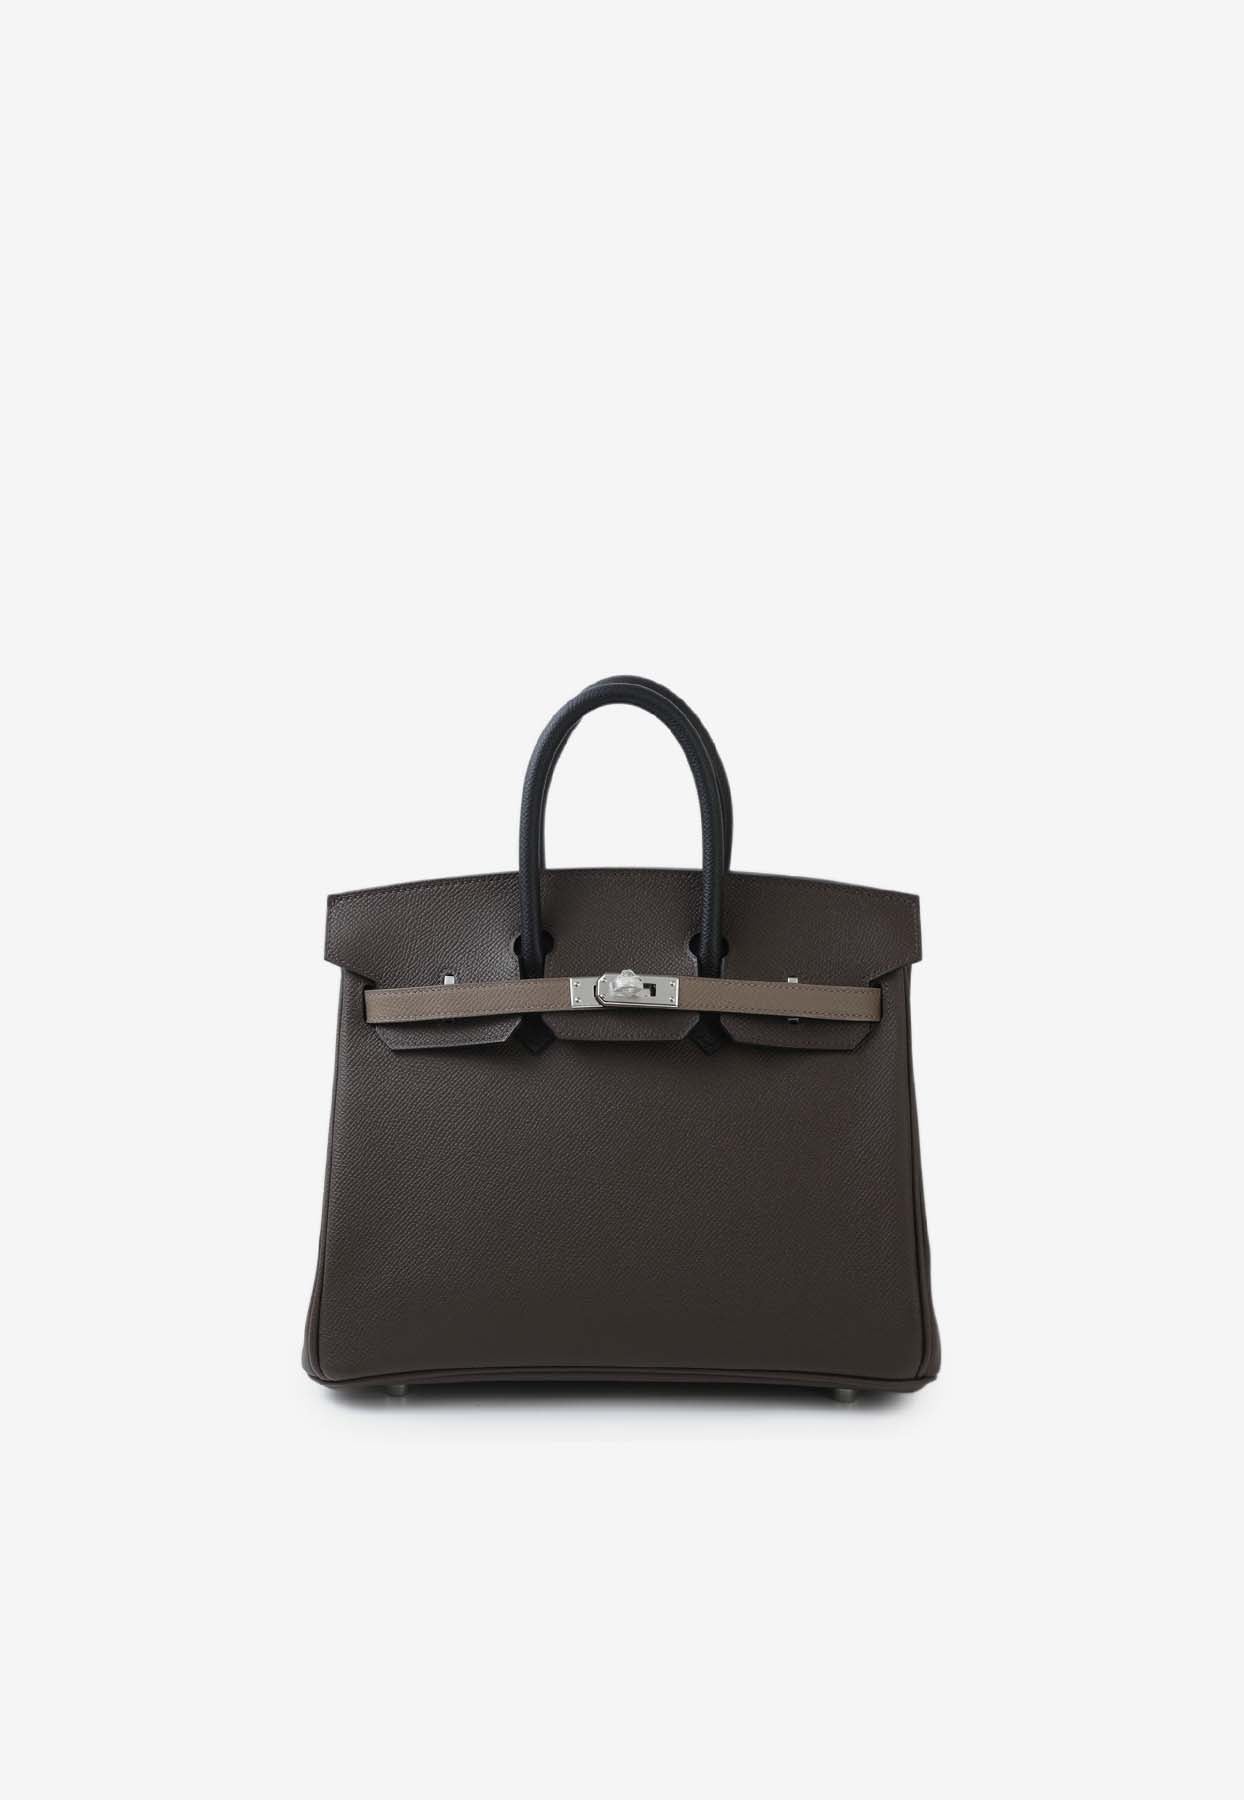 Shop Hermes Birkin 25 In Ecorce, Etoupe And Black Epsom Leather With Palladium Hardware